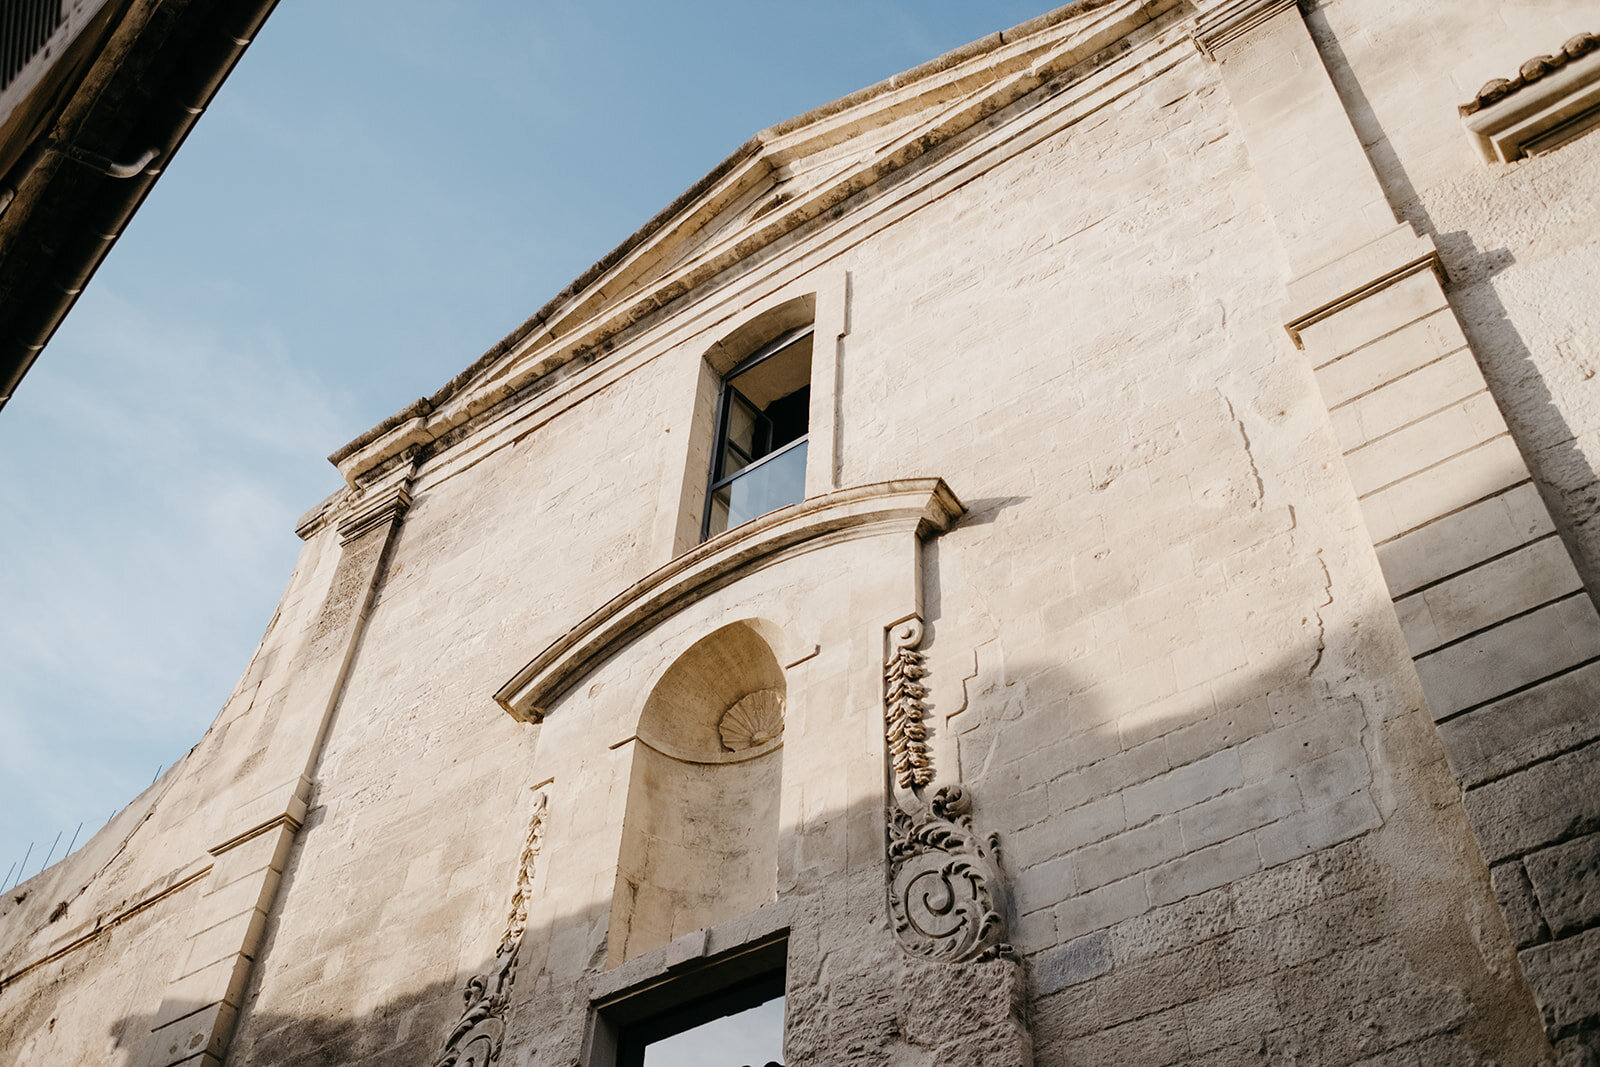 Ancient buildings in Arles